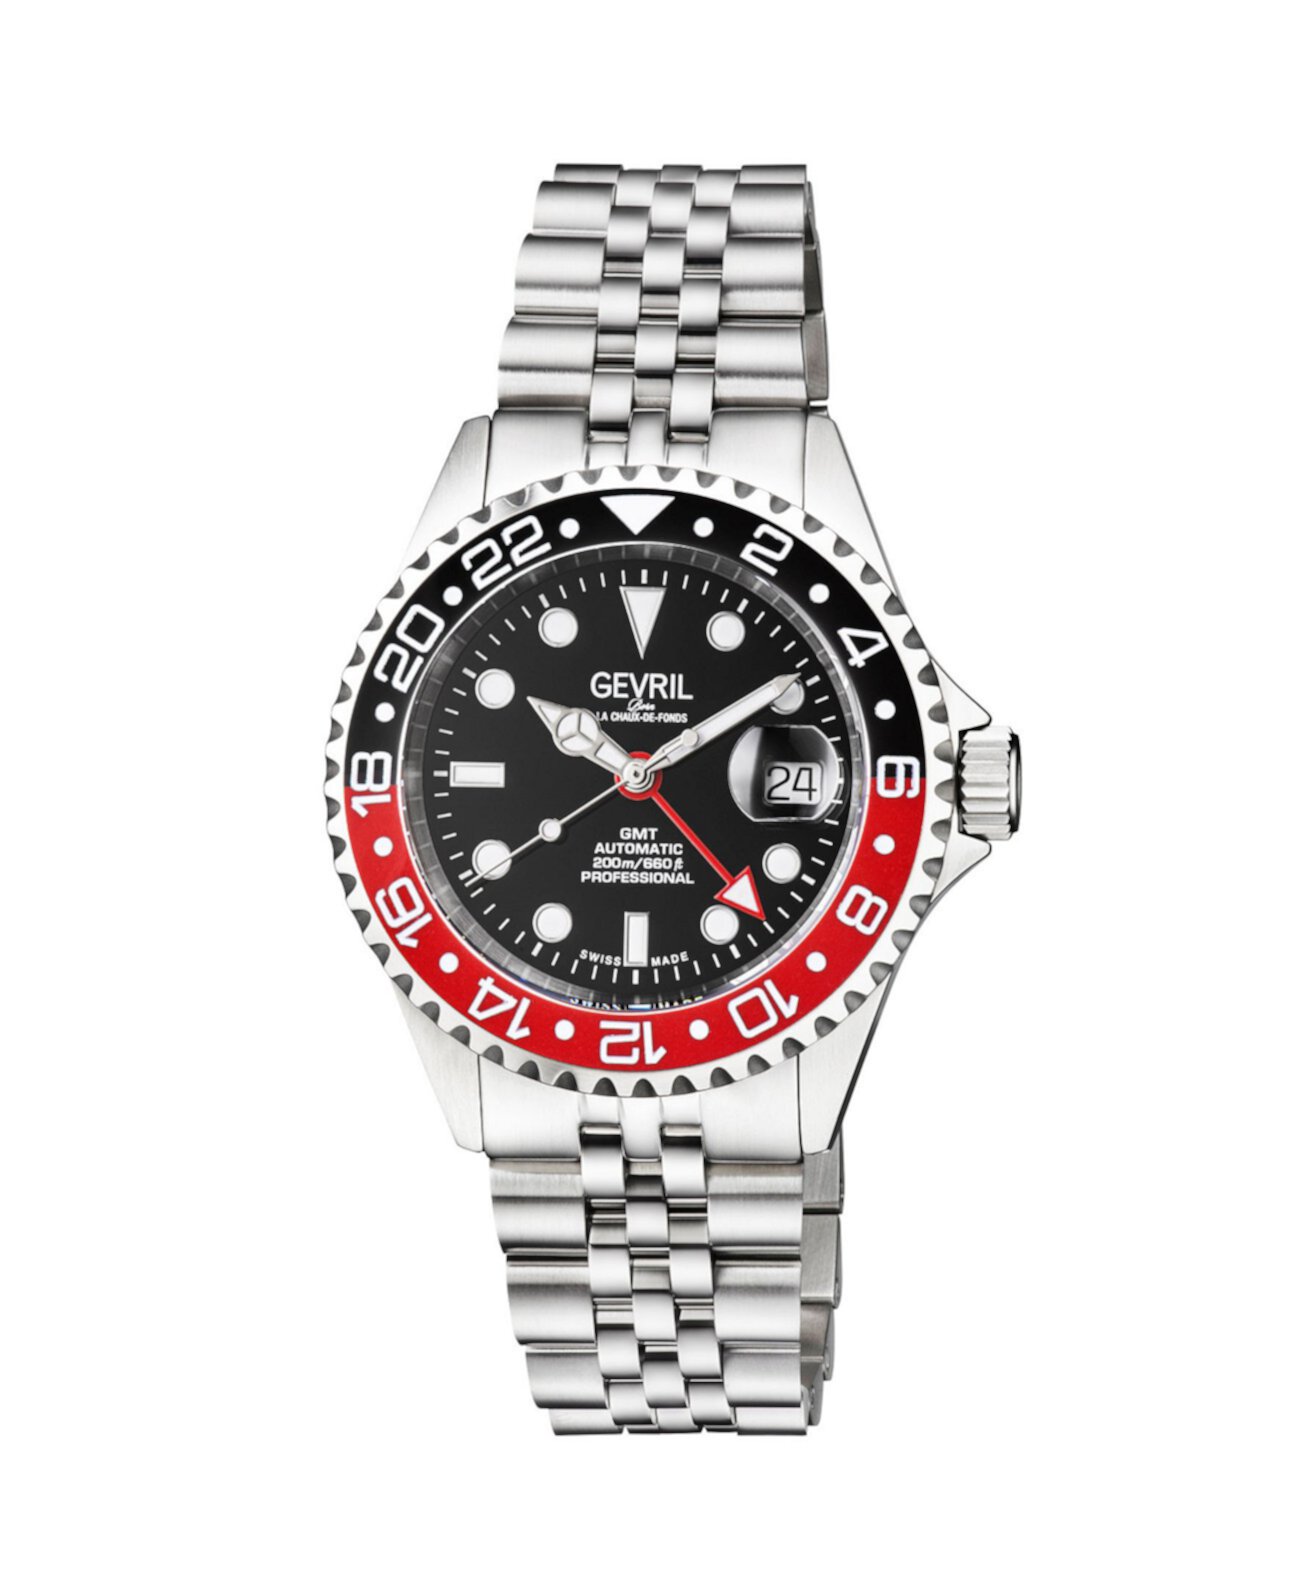 Мужские швейцарские часы с автоматическим браслетом Wall Street серебристого цвета из нержавеющей стали, 43 мм Gevril